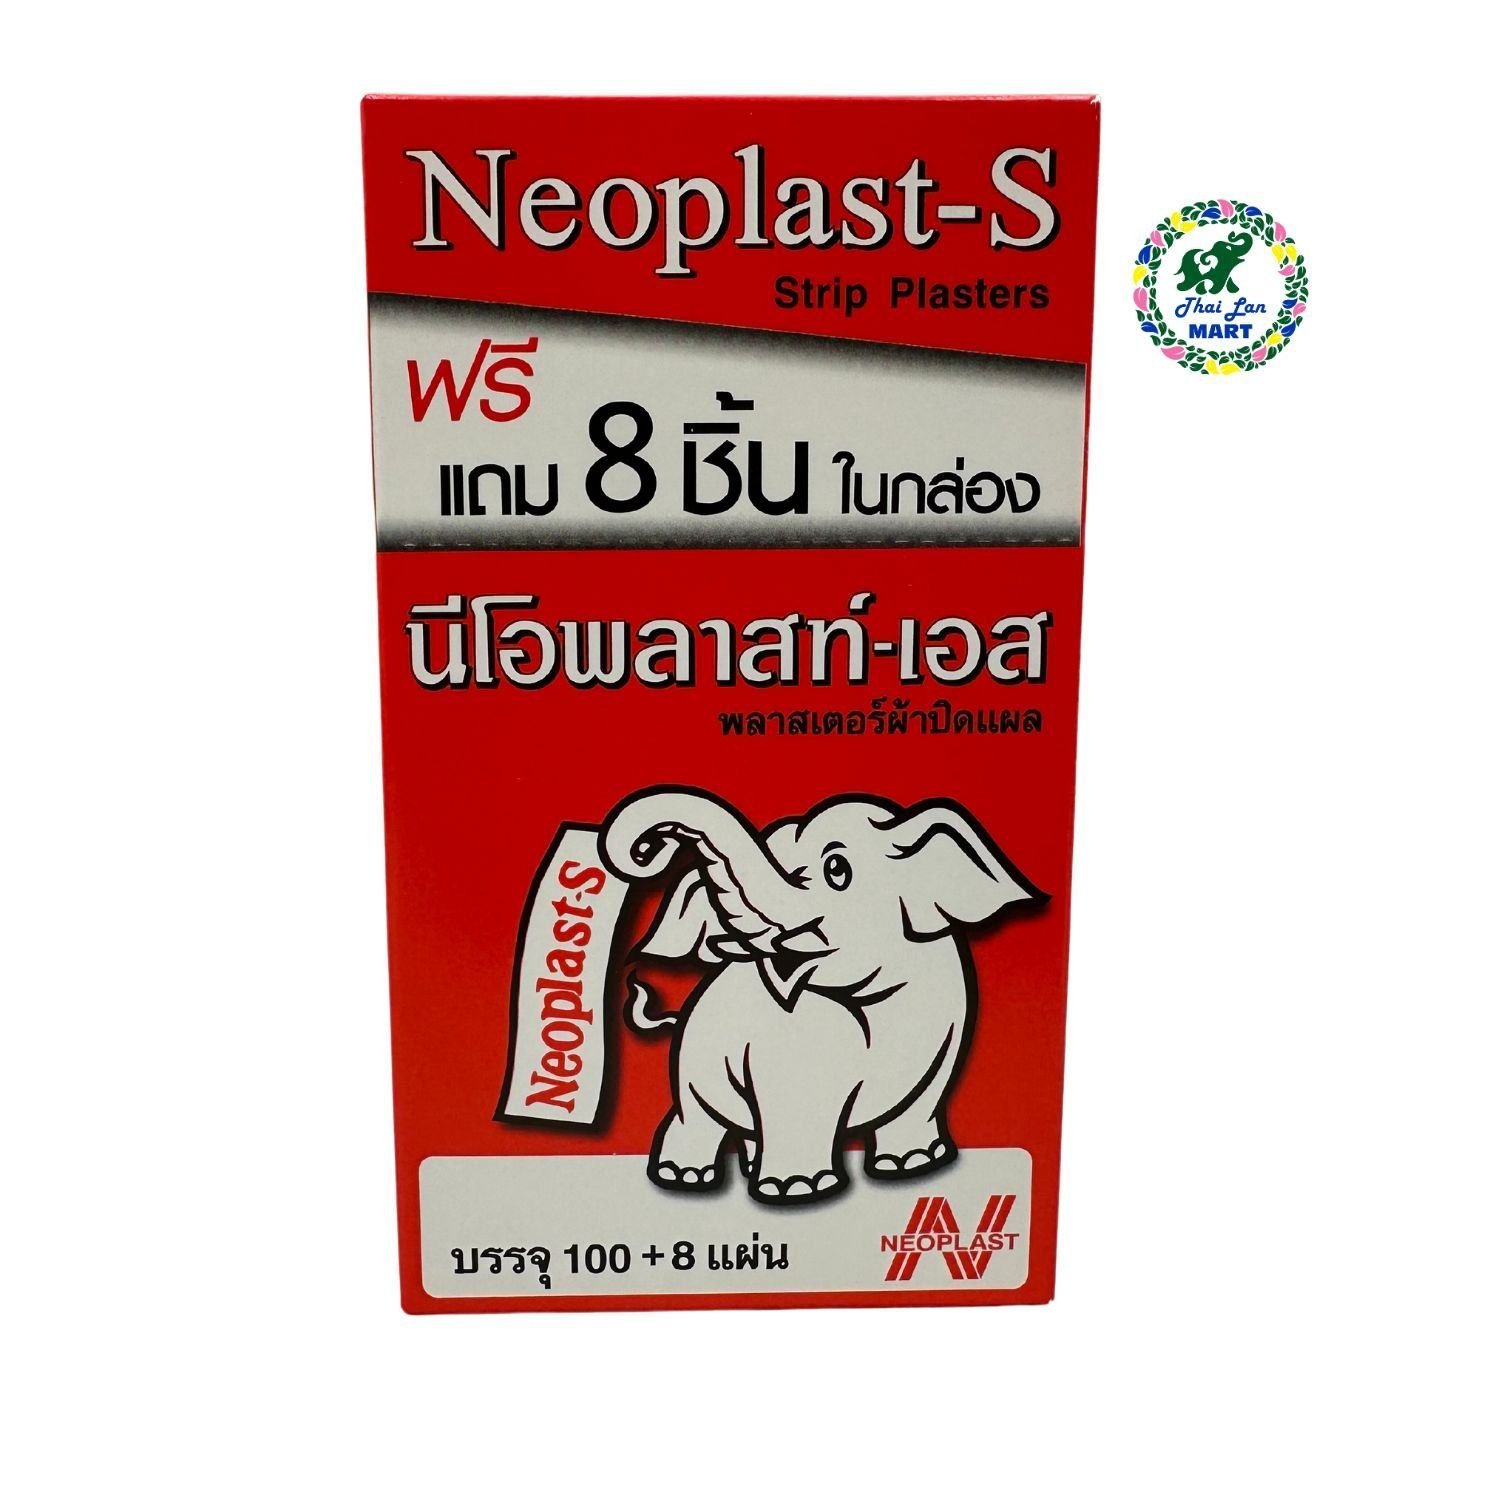  Băng keo cá nhân neoplast-s con voi một hộp có 100 miếng dán hàng nội địa chính hãng thái lan 